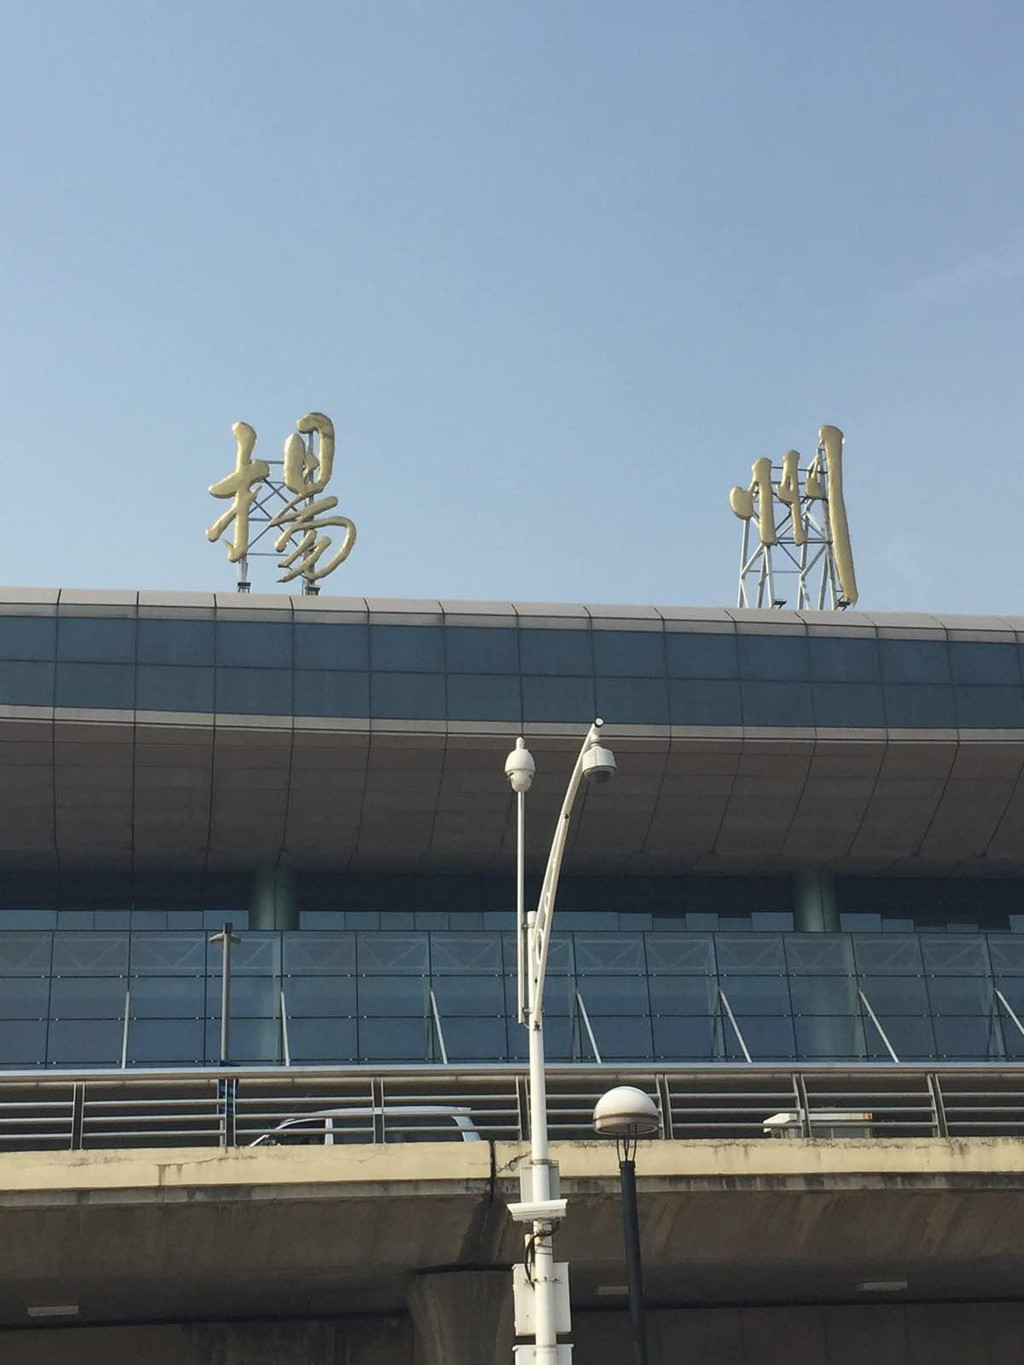 扬州火车站